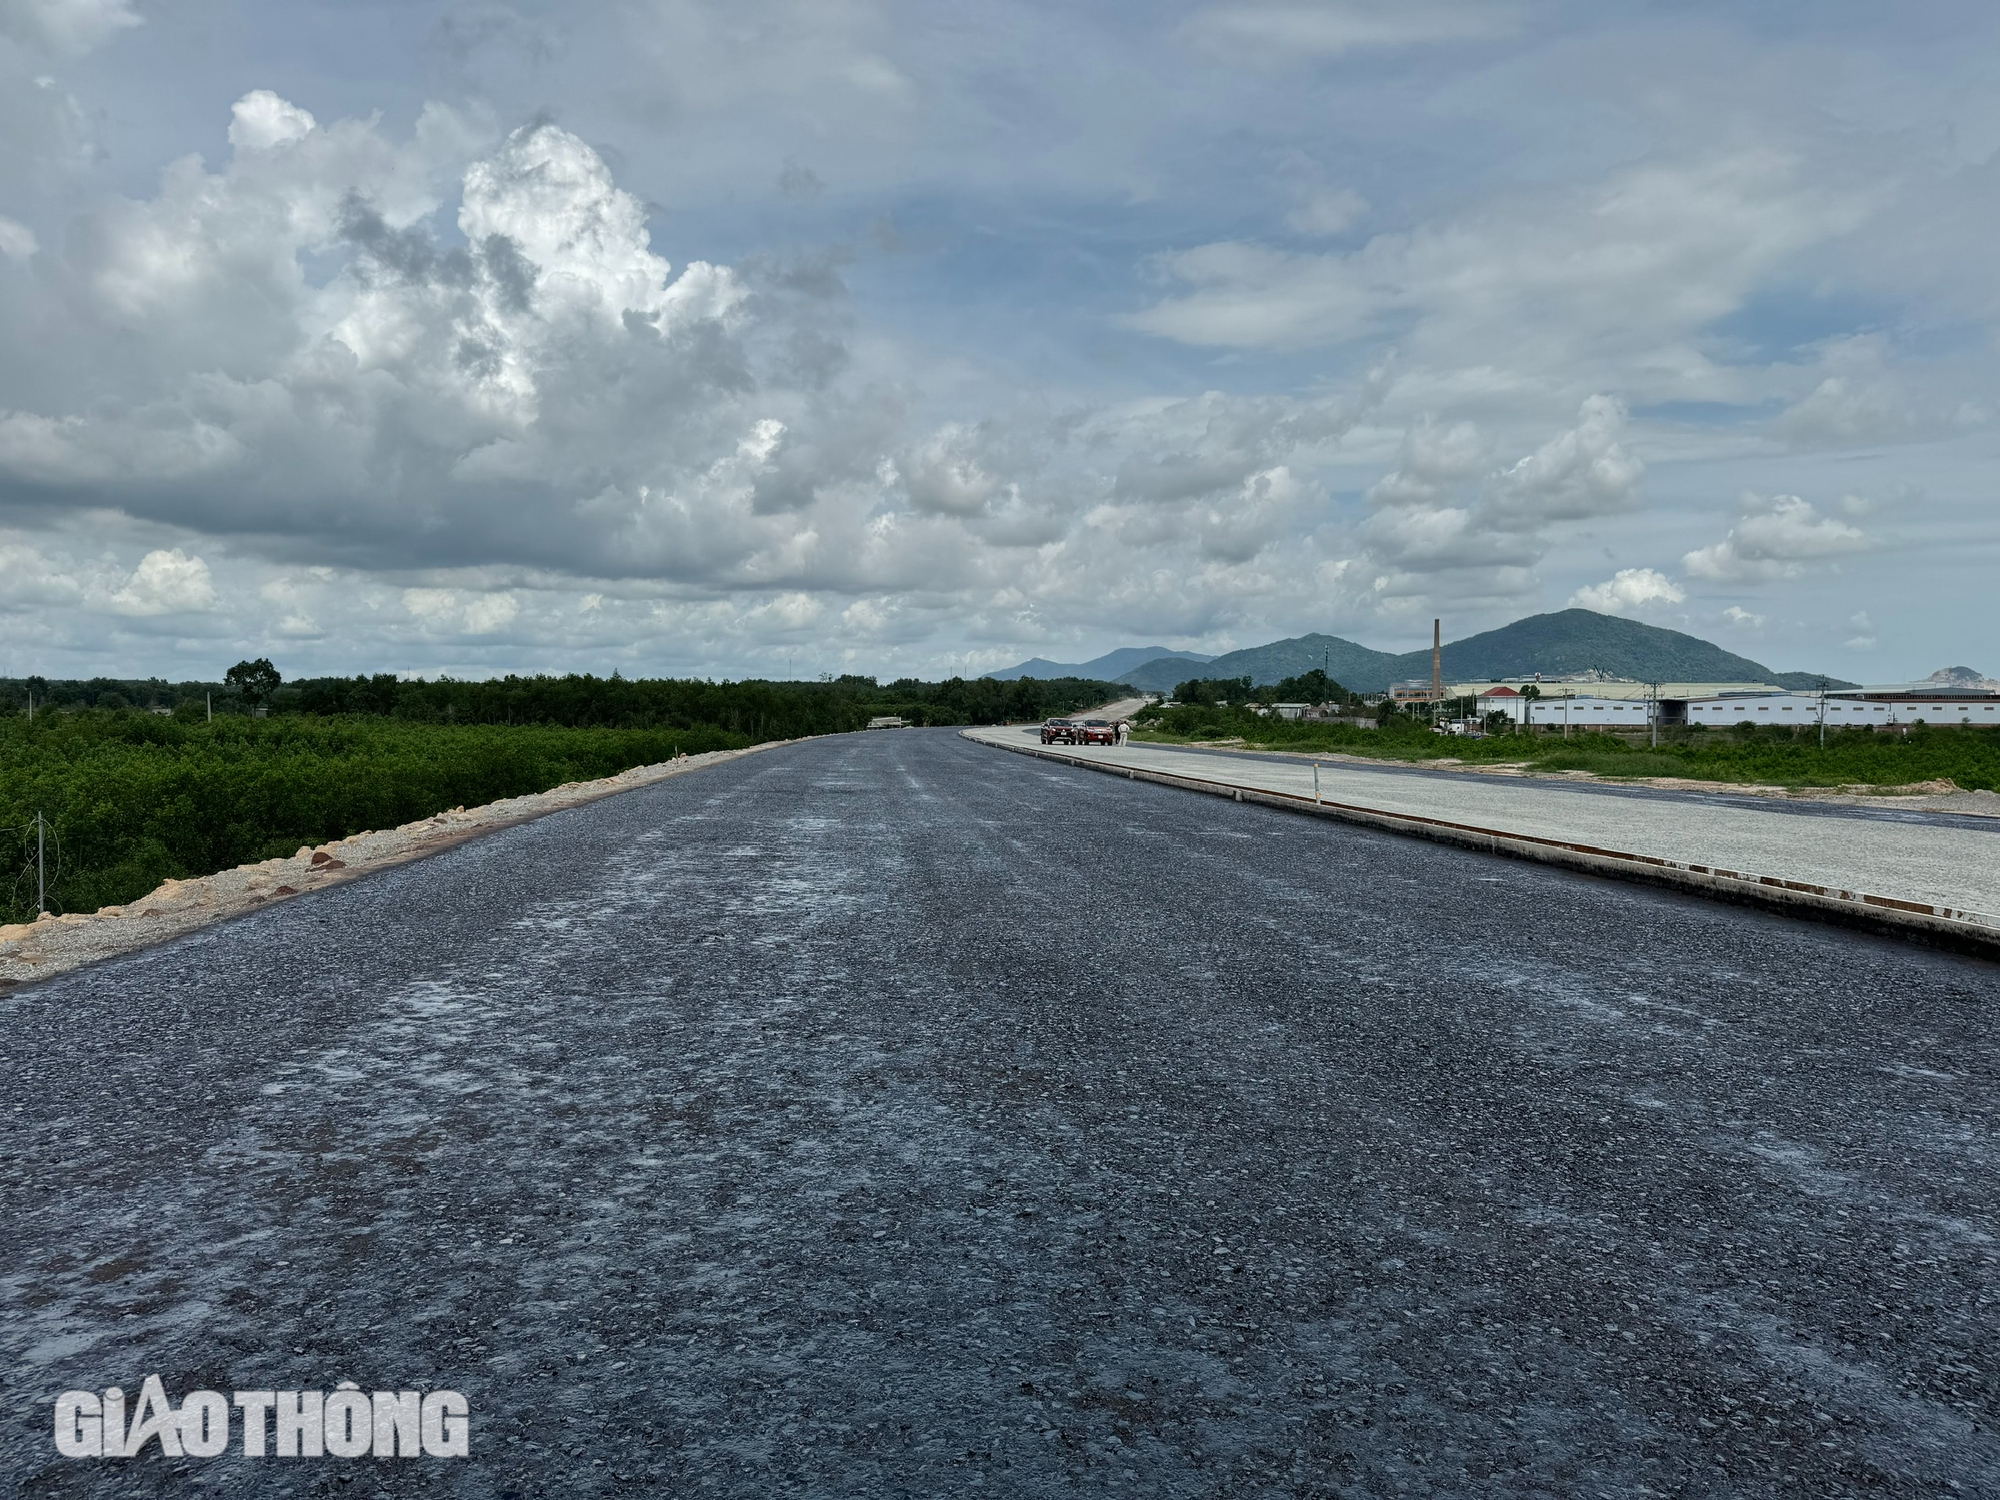 Cao tốc Biên Hòa qua Bà Rịa - Vũng Tàu sẵn sàng thảm nhựa, thông xe kỹ thuật sớm 5 tháng- Ảnh 3.